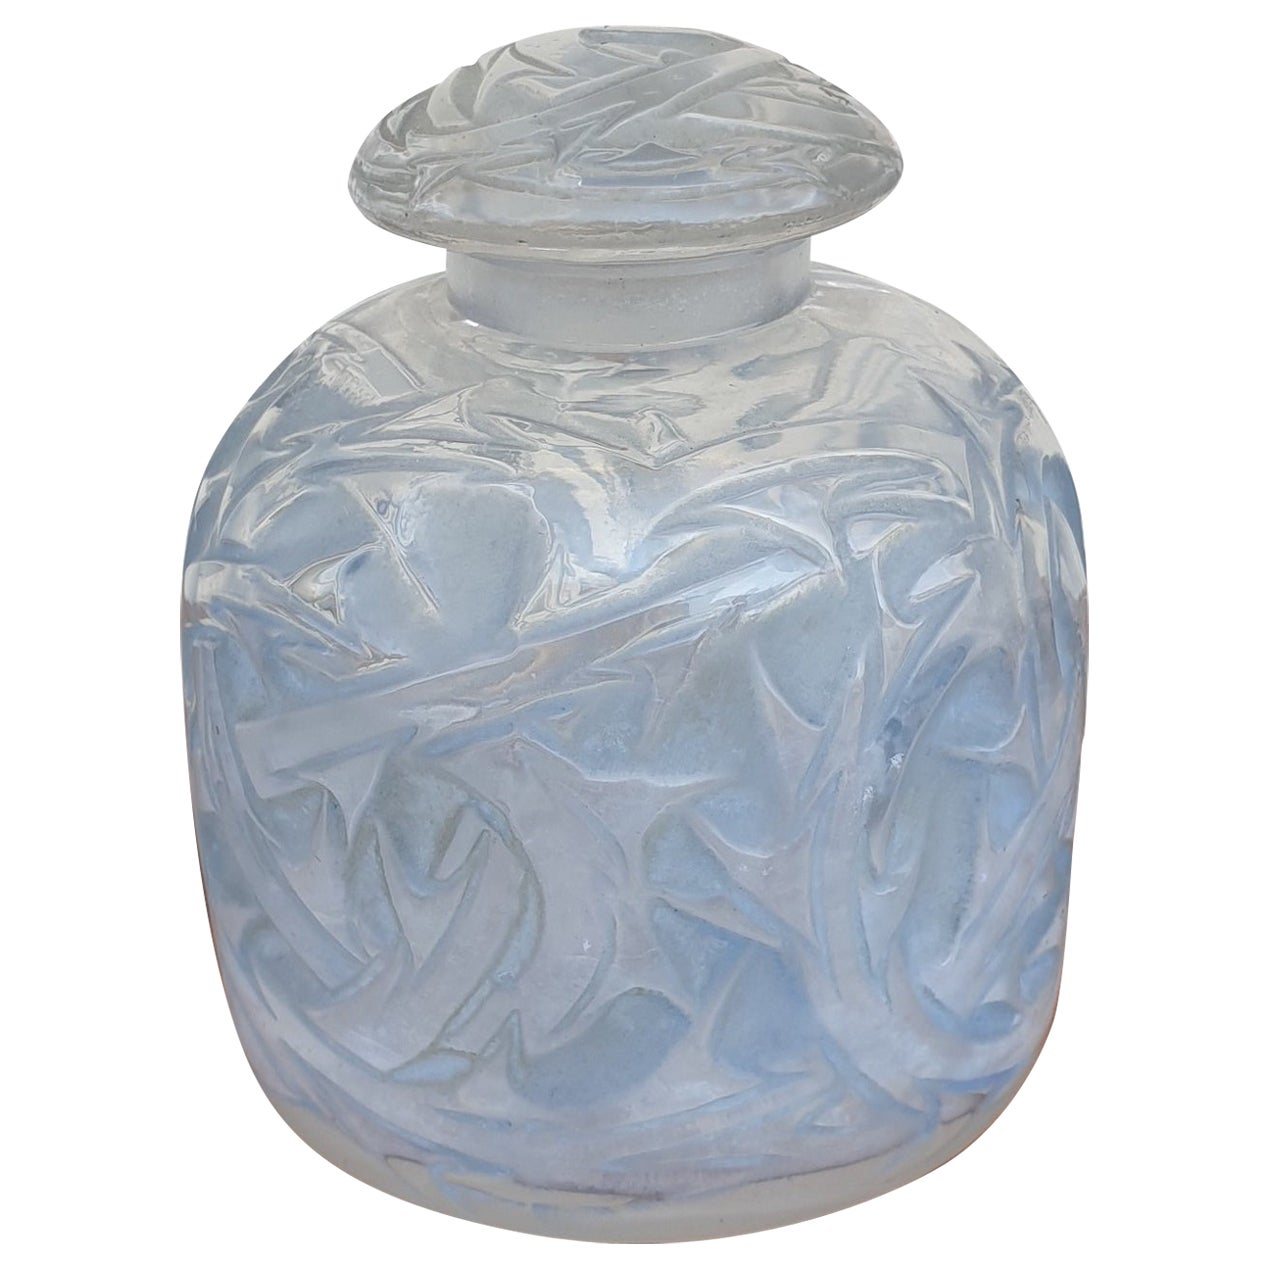 R Lalique, Flasche "Epine" N°4, 20. Jahrhundert